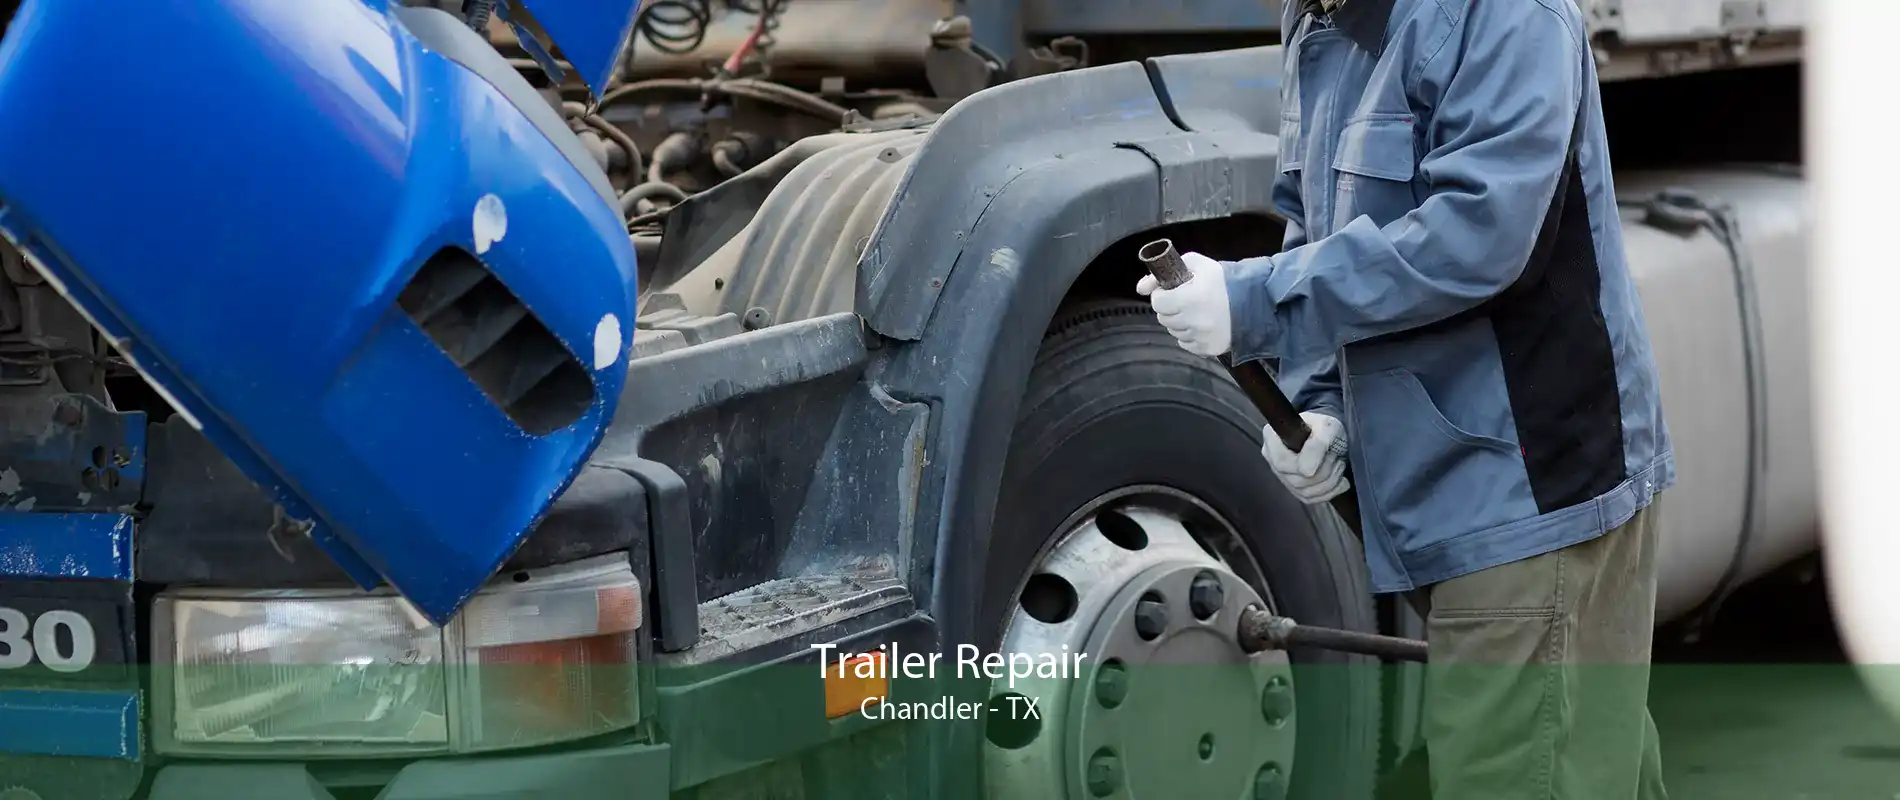 Trailer Repair Chandler - TX